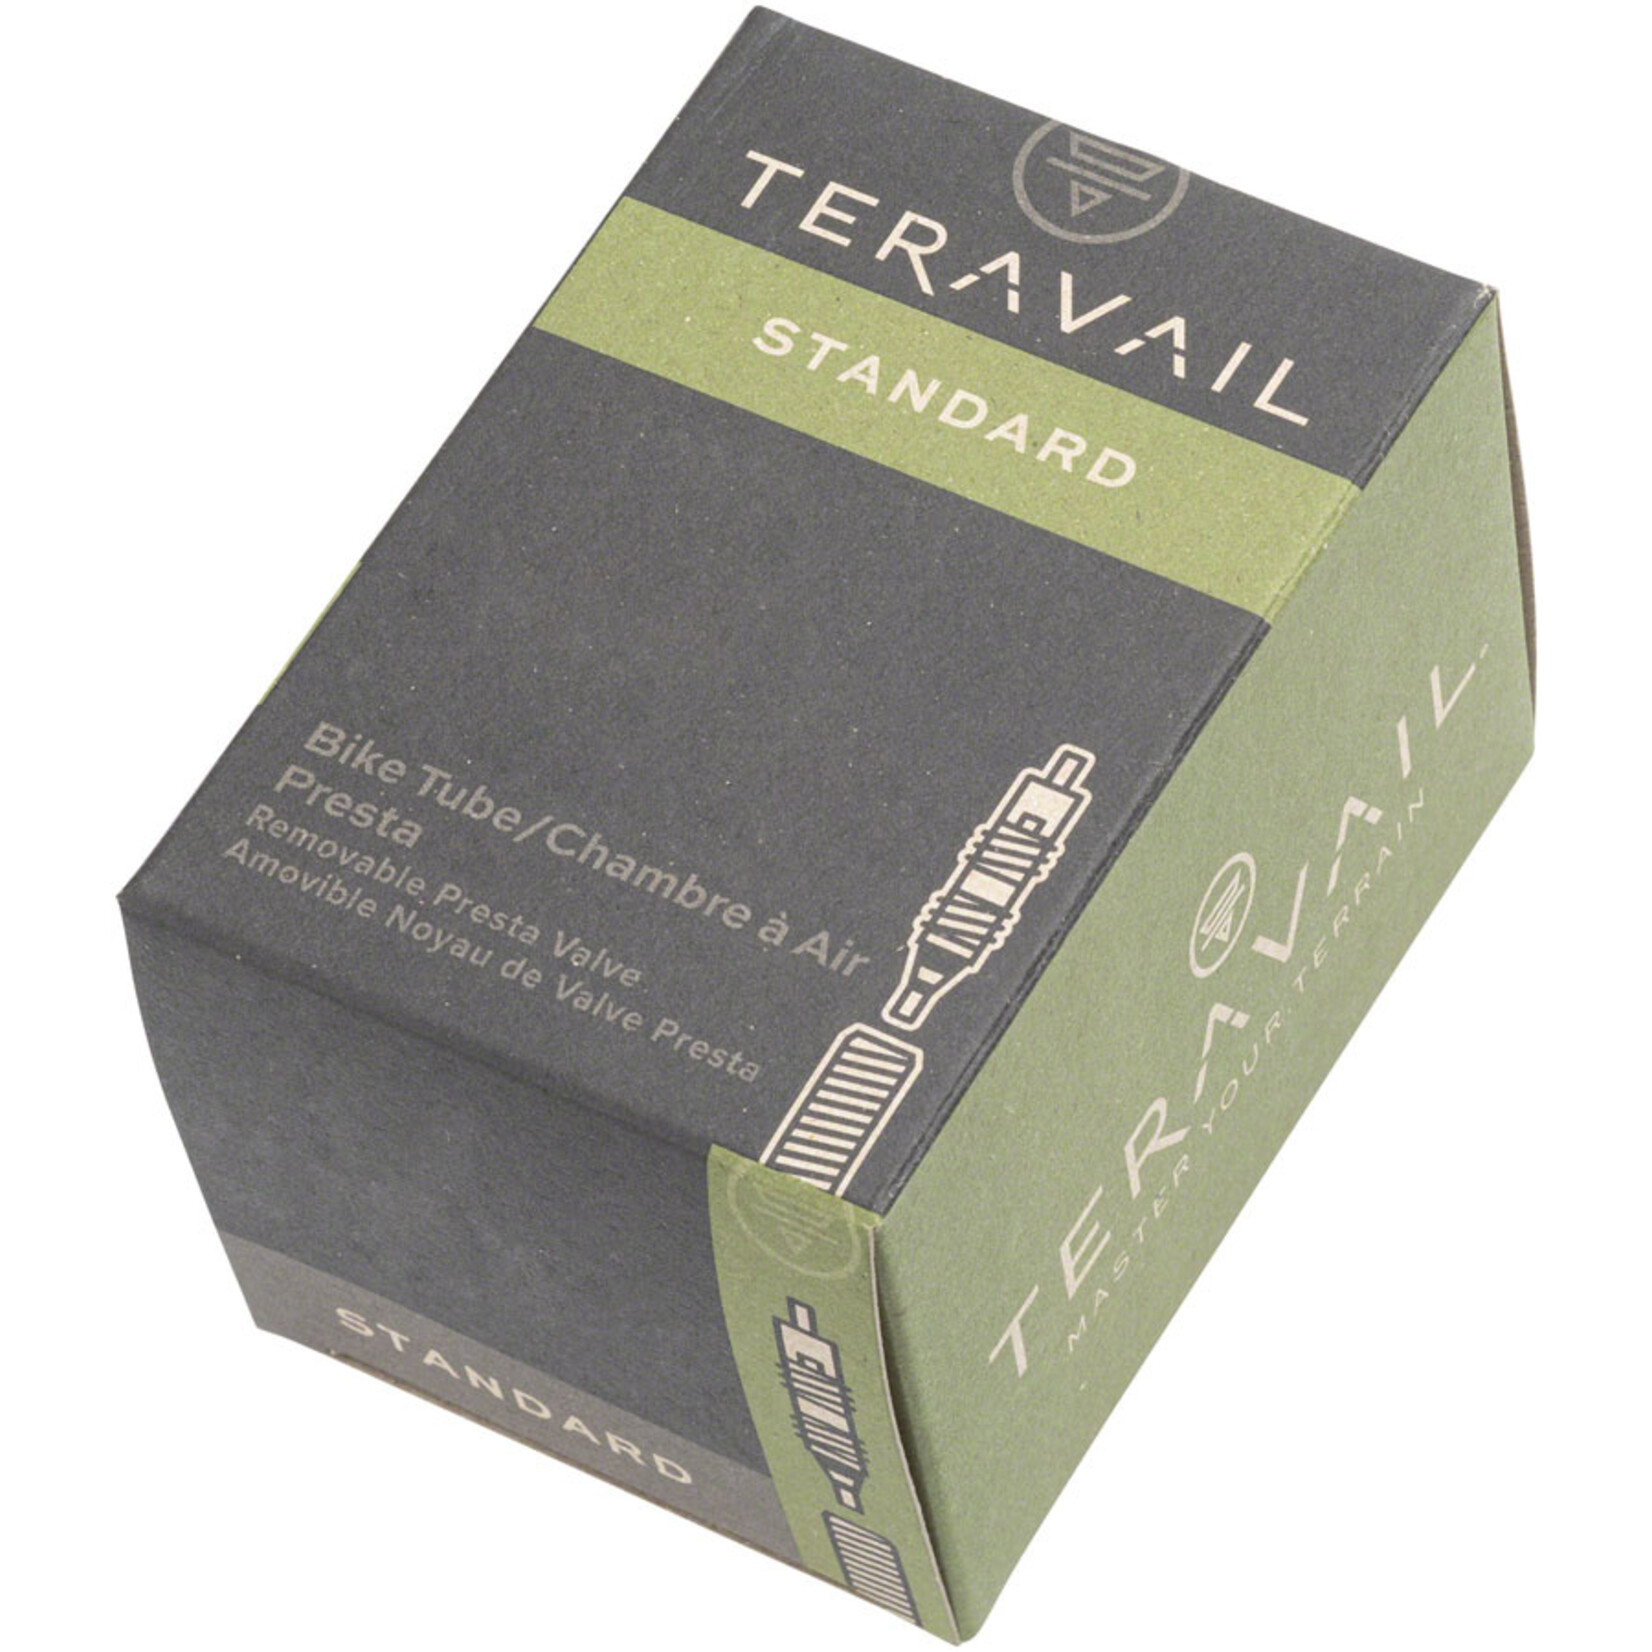 Teravail Teravail Standard Presta Tube - 27.5x2.00-2.40 48mm